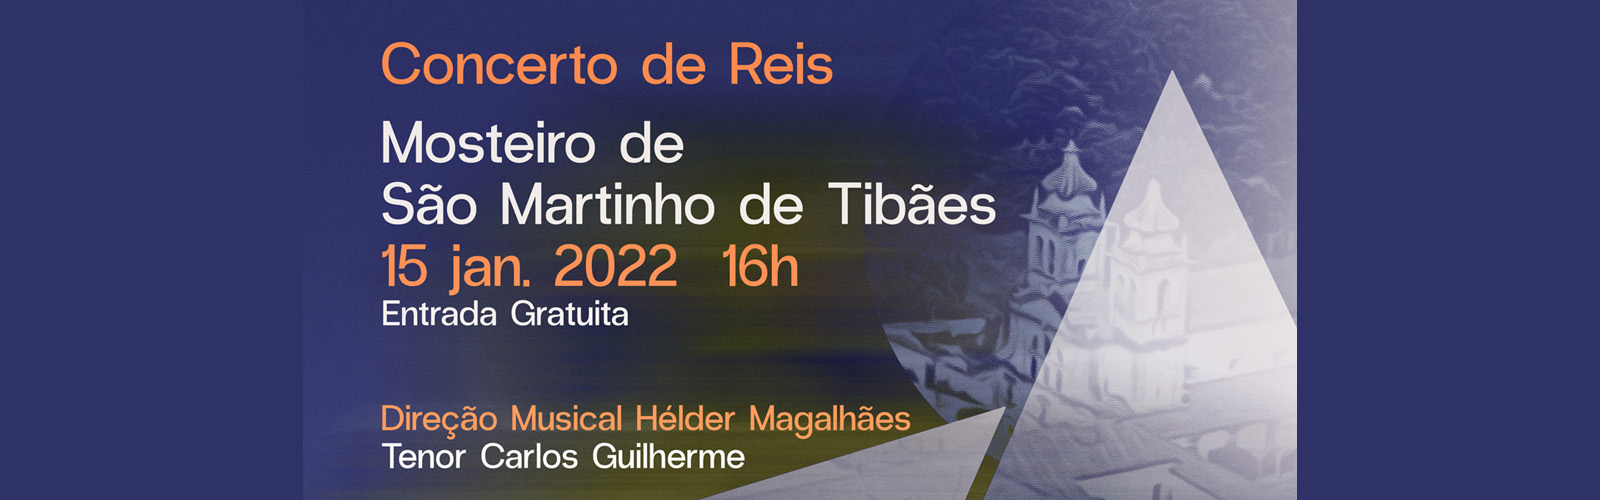 Concerto de Reis pela Orquestra Portuguesa de Guitarras e Bandolins